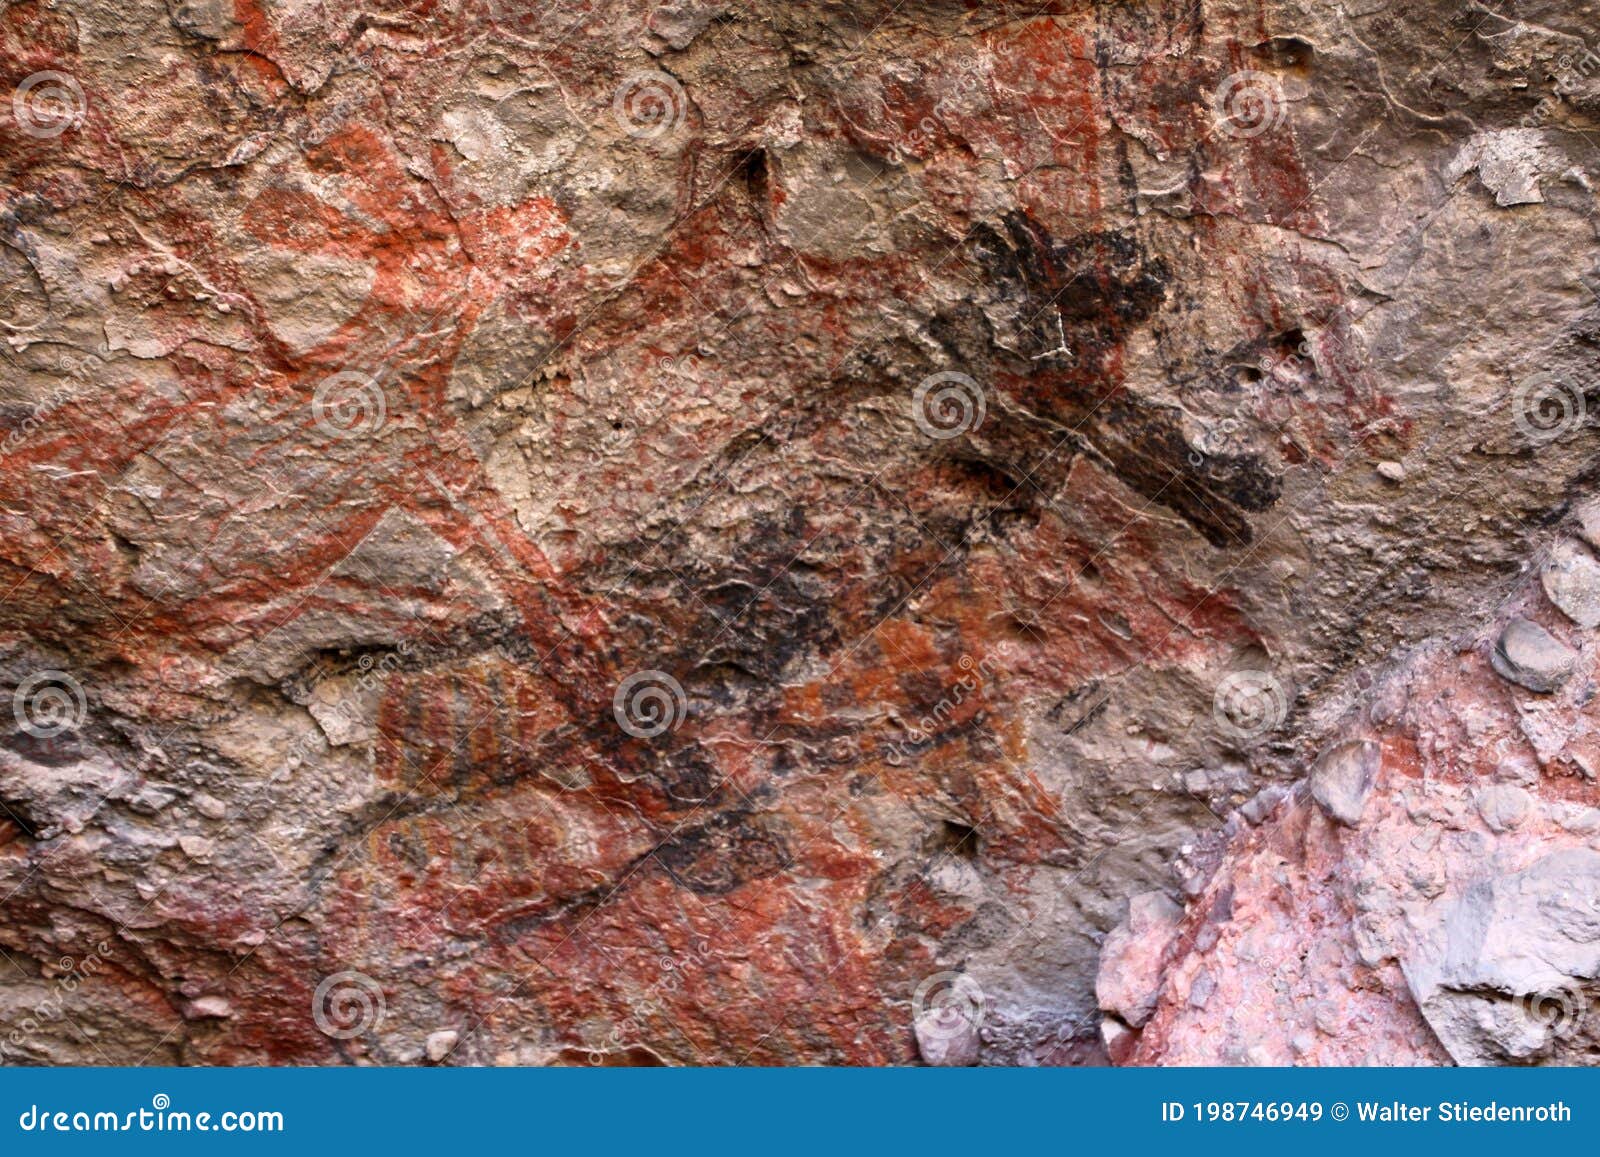 cave paintings in loreto cueva del raton